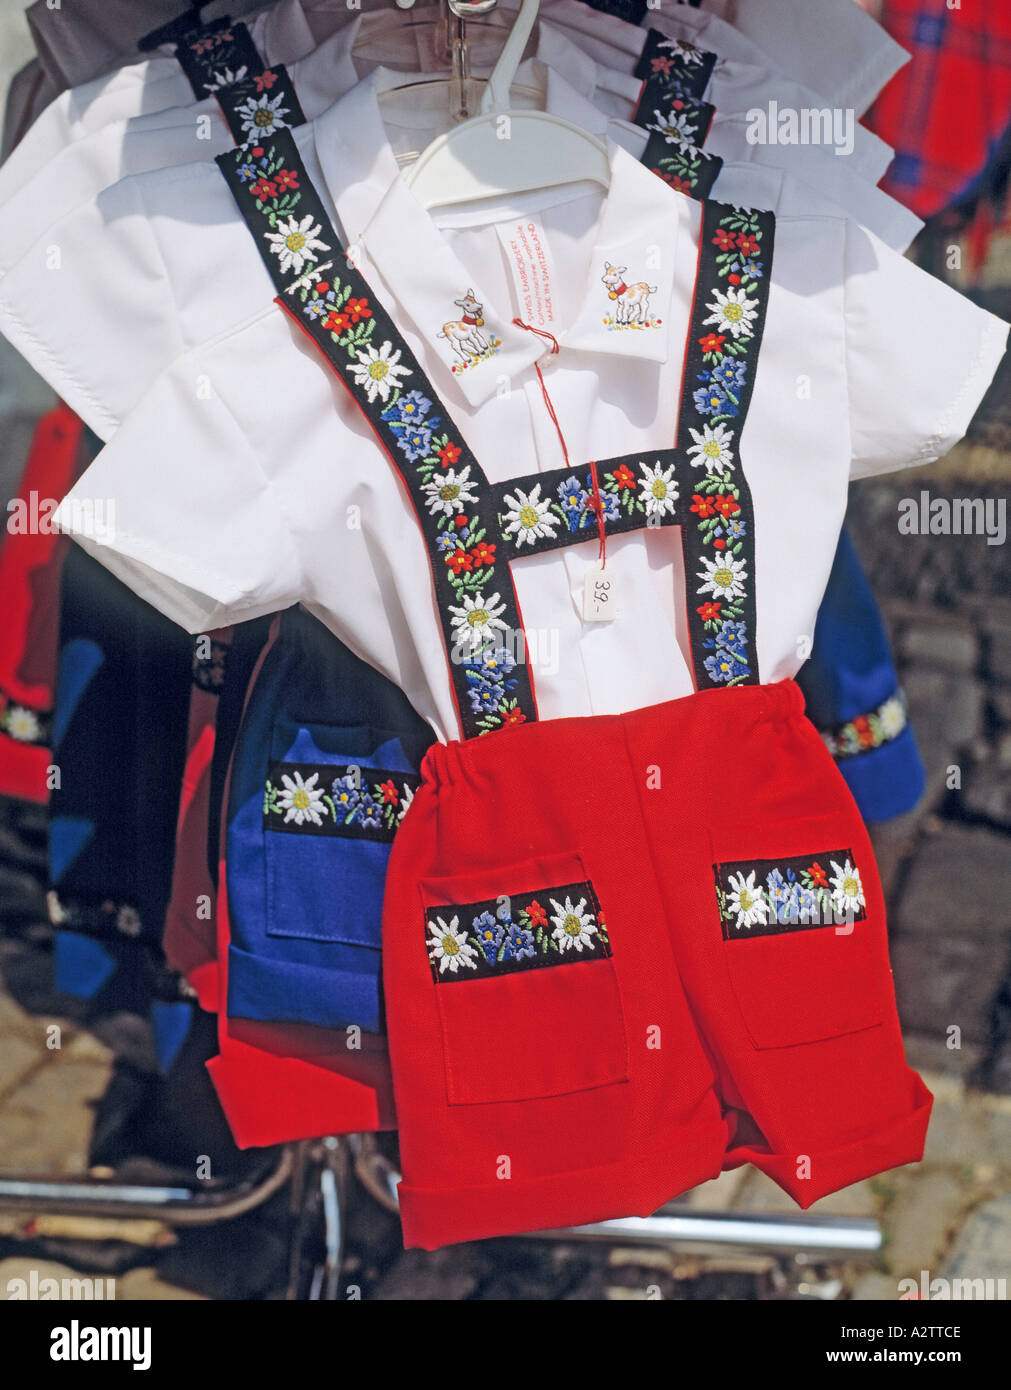 Typisch Schweiz Kleidung folkloristische souvenir Stockfotografie - Alamy